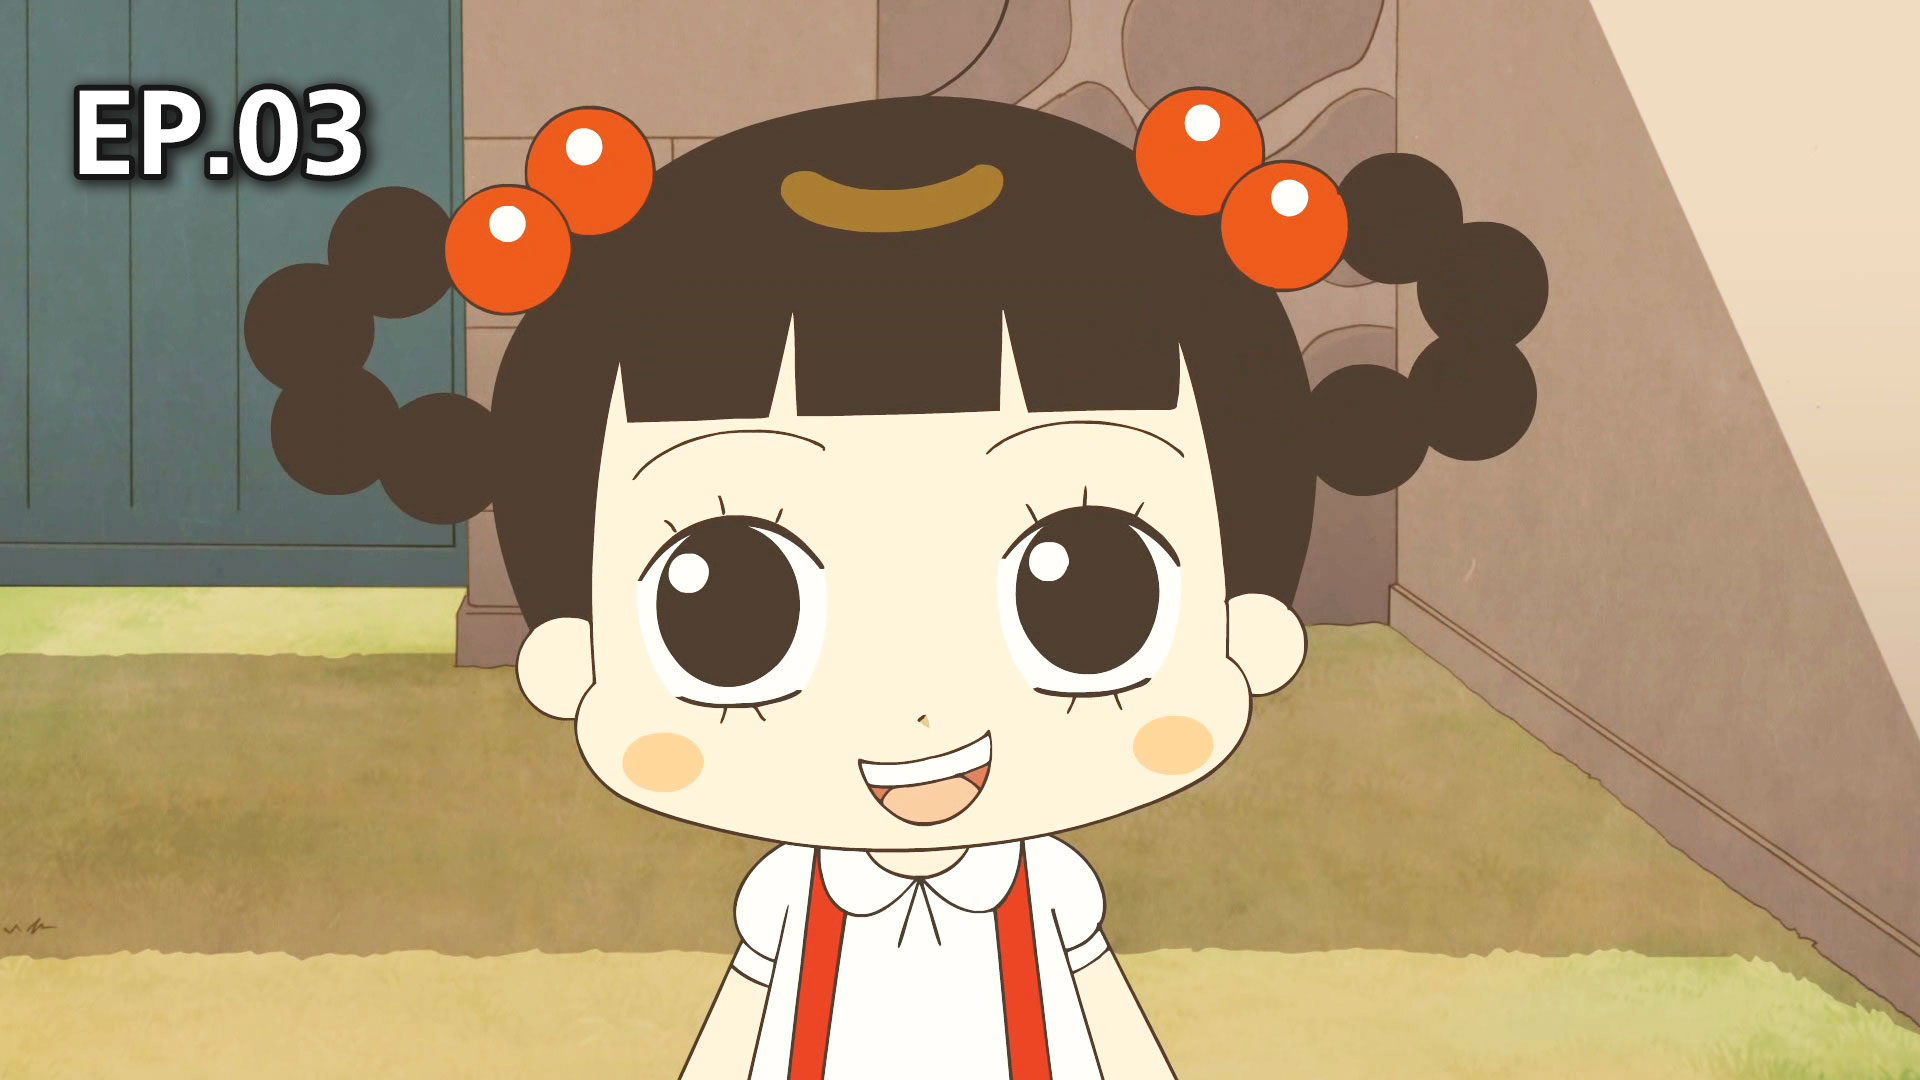 2022) Lịch để bàn IN HÌNH HELLO JADOO anime chibi hoạt hình Hàn Quốc CHỮ  NHẬT NGANG dễ thương xinh xắn mẫu ngẫu nhiên | Lazada.vn